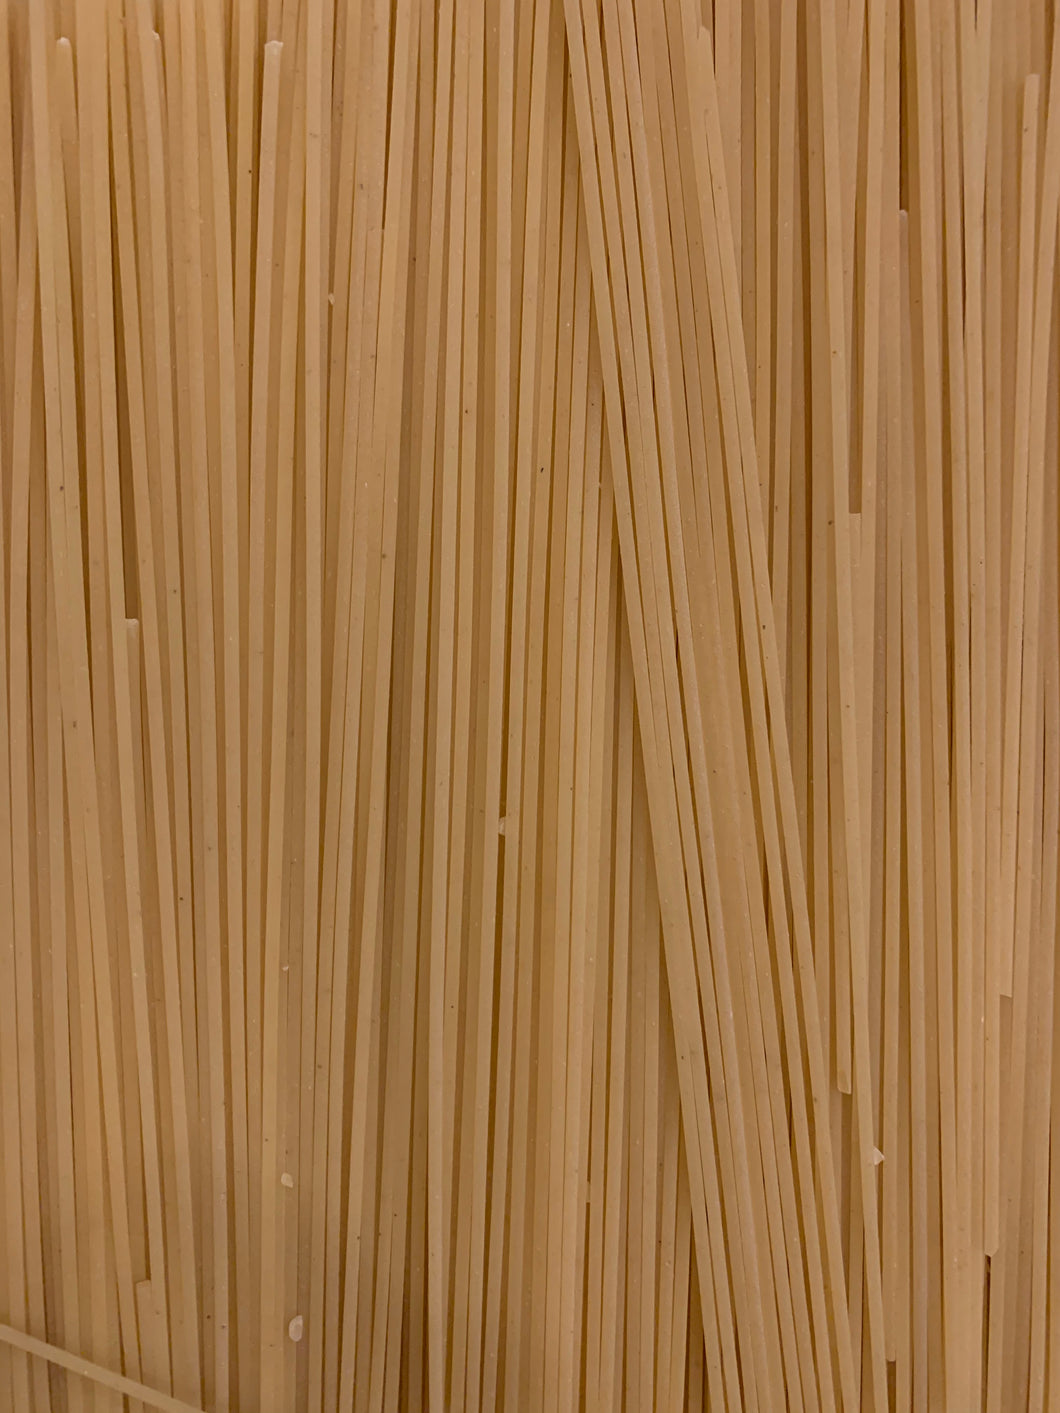 Spaghetti White 500g